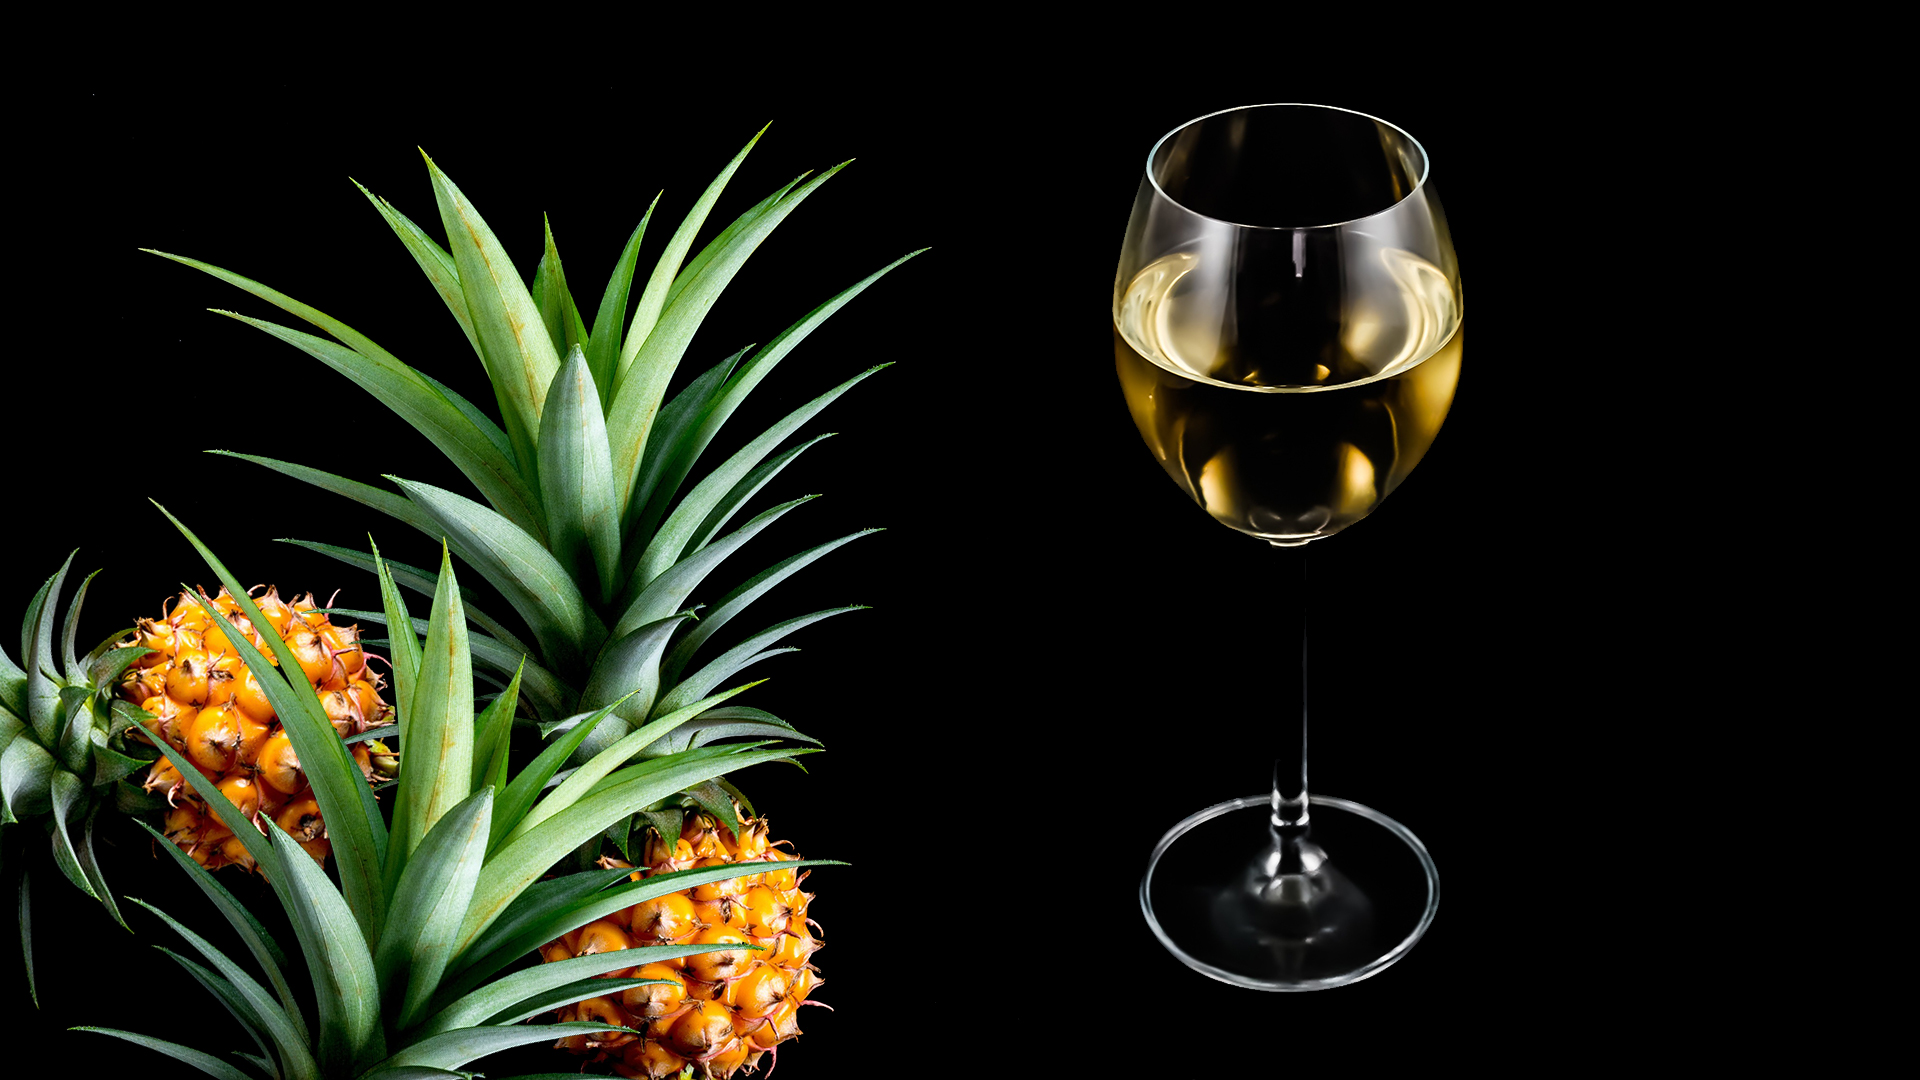 Maui pineapple wine